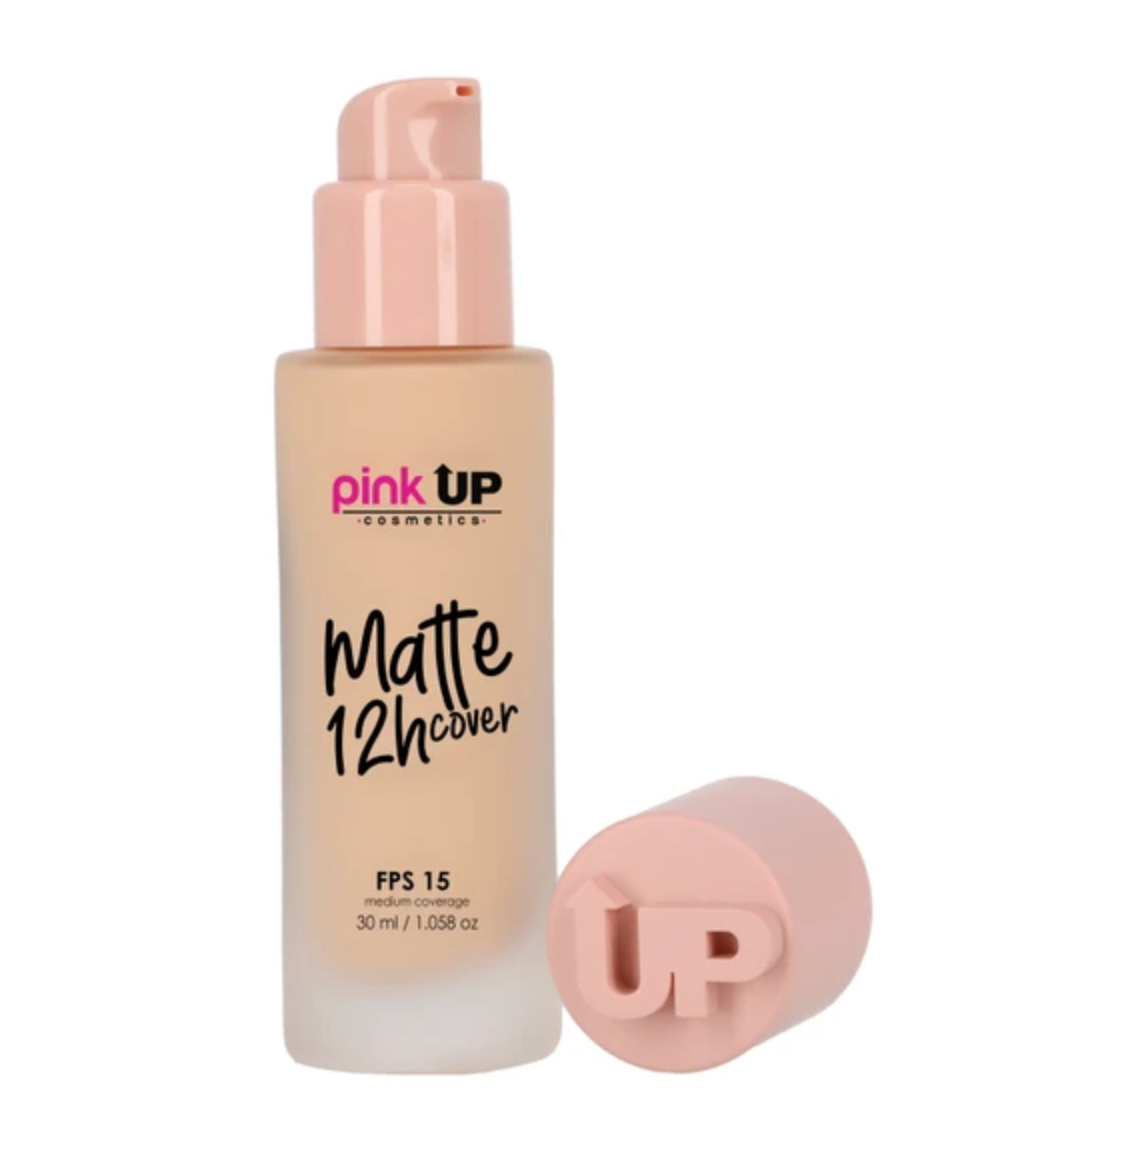 Maquillaje Líquido de Cobertura Media, Matte 12 Hrs. Pink Up